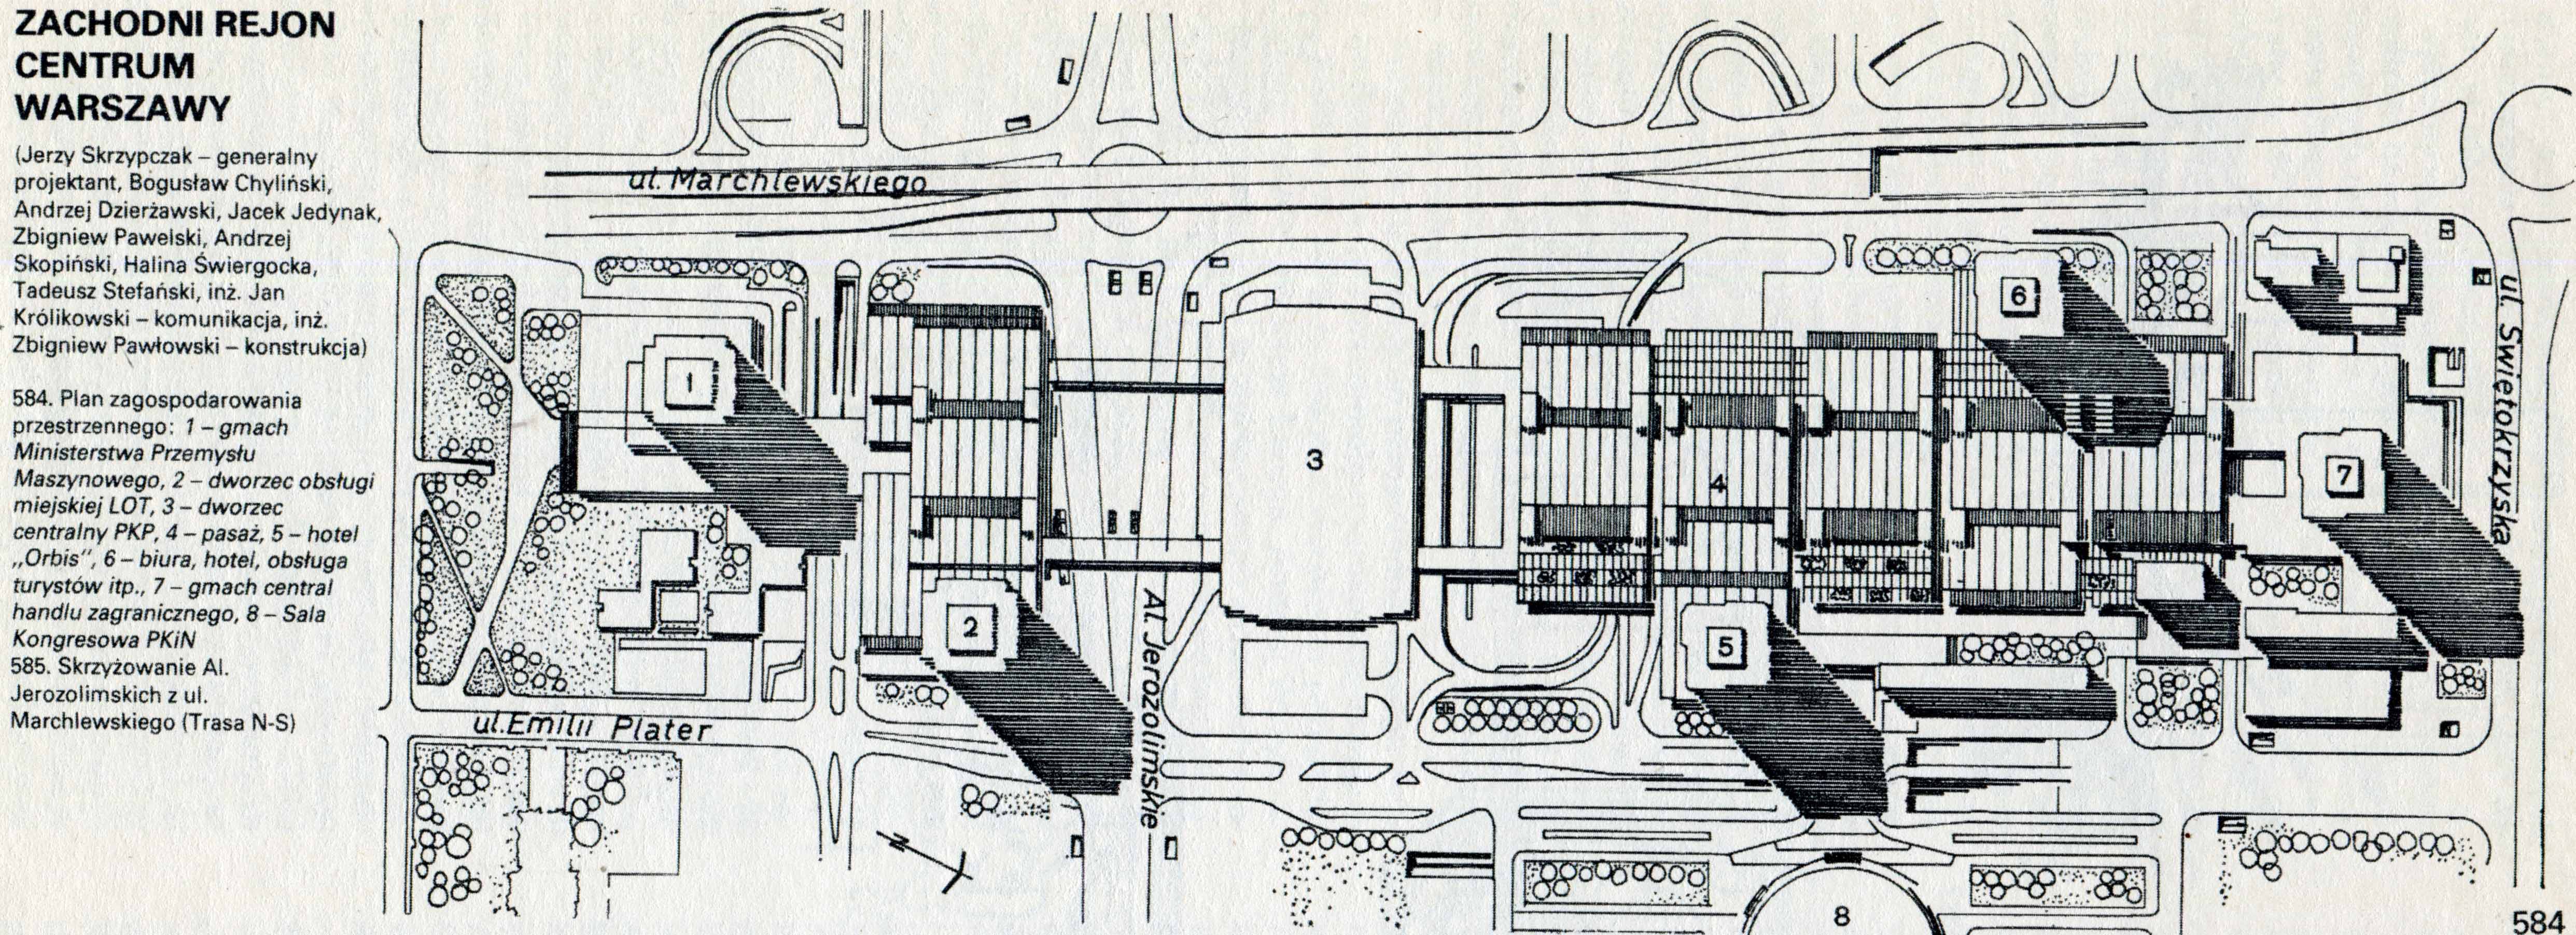 Zagospodarowanie terenu Zachodniego Centrum, 1974, rys. ze zbiorów GM